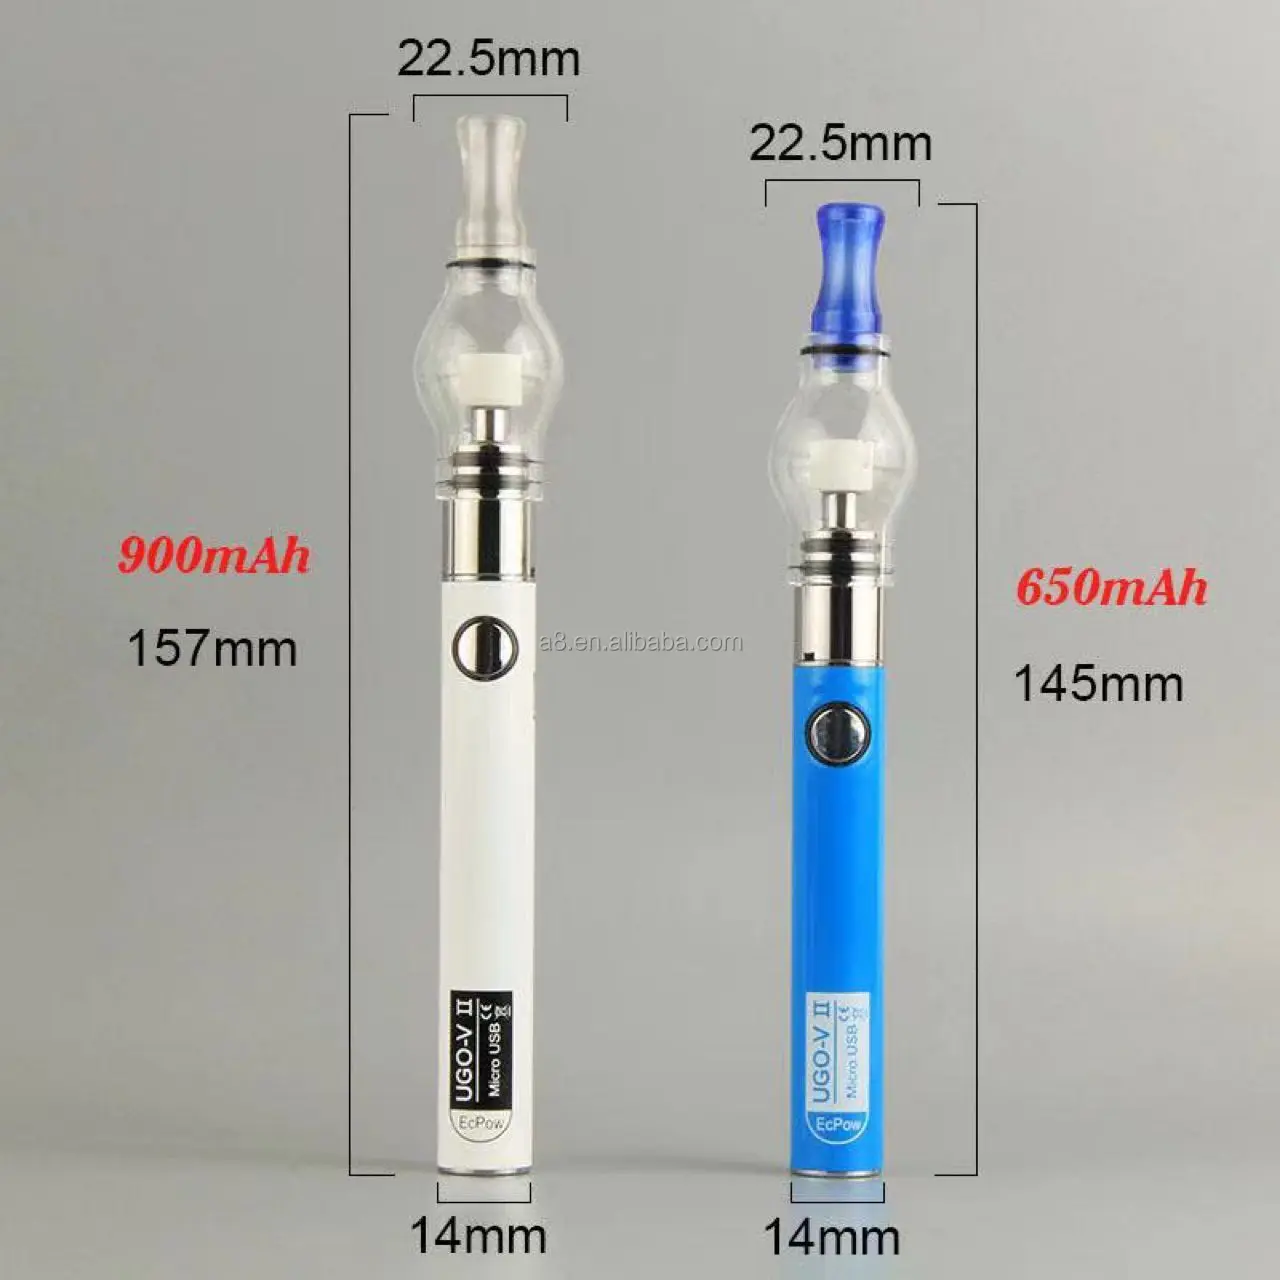 Самое популярное Новое поступление 5 видов цветов 650 мАч электронная сигарета CBD vape ручка с индивидуальная упаковка